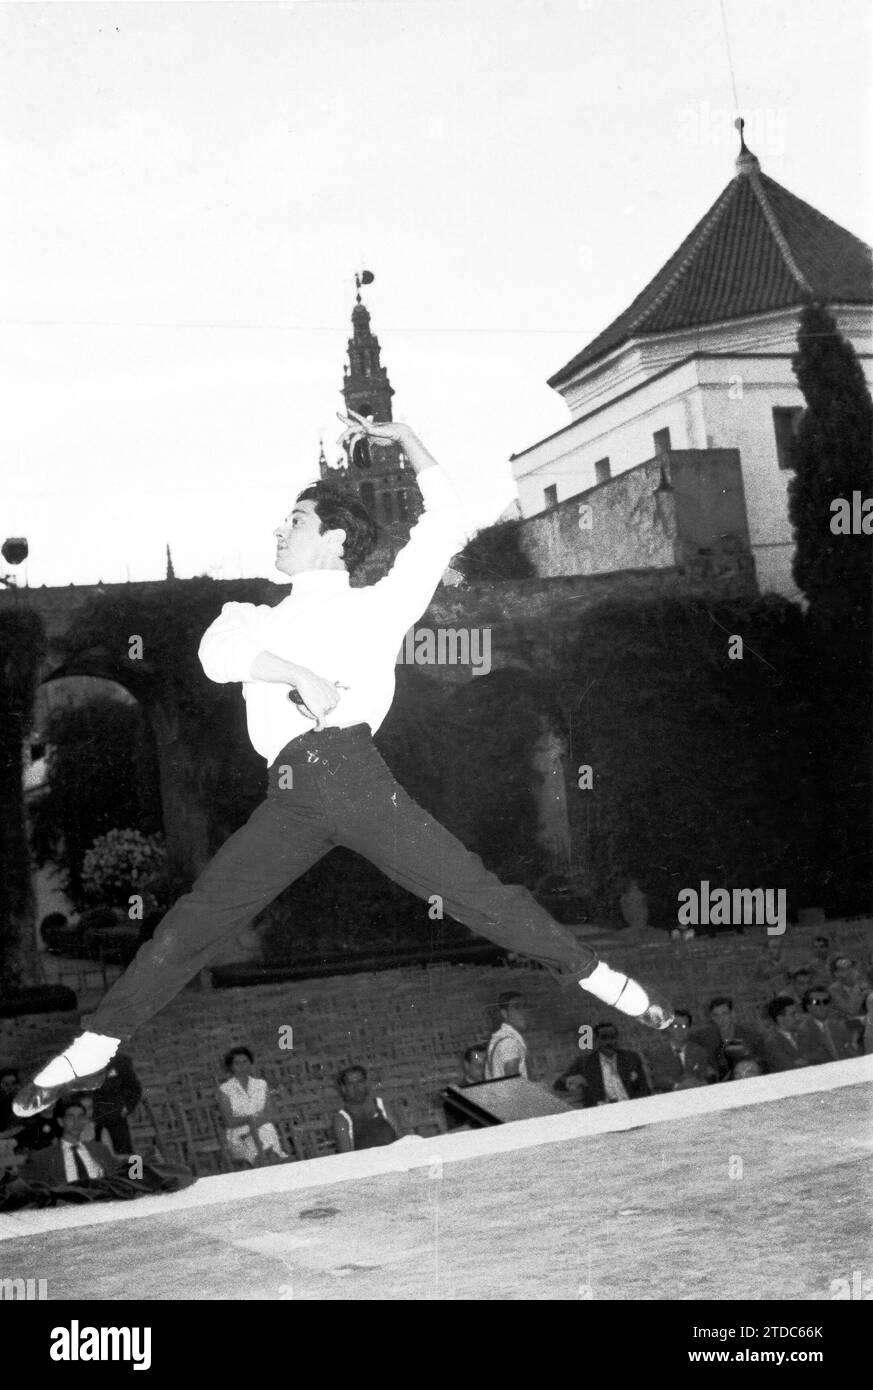 01/01/1960. Antonio, der Tänzer, probt im Innenhof von La Montería. Fotomodus. Quelle: Album / Archivo ABC / Cubiles Stockfoto